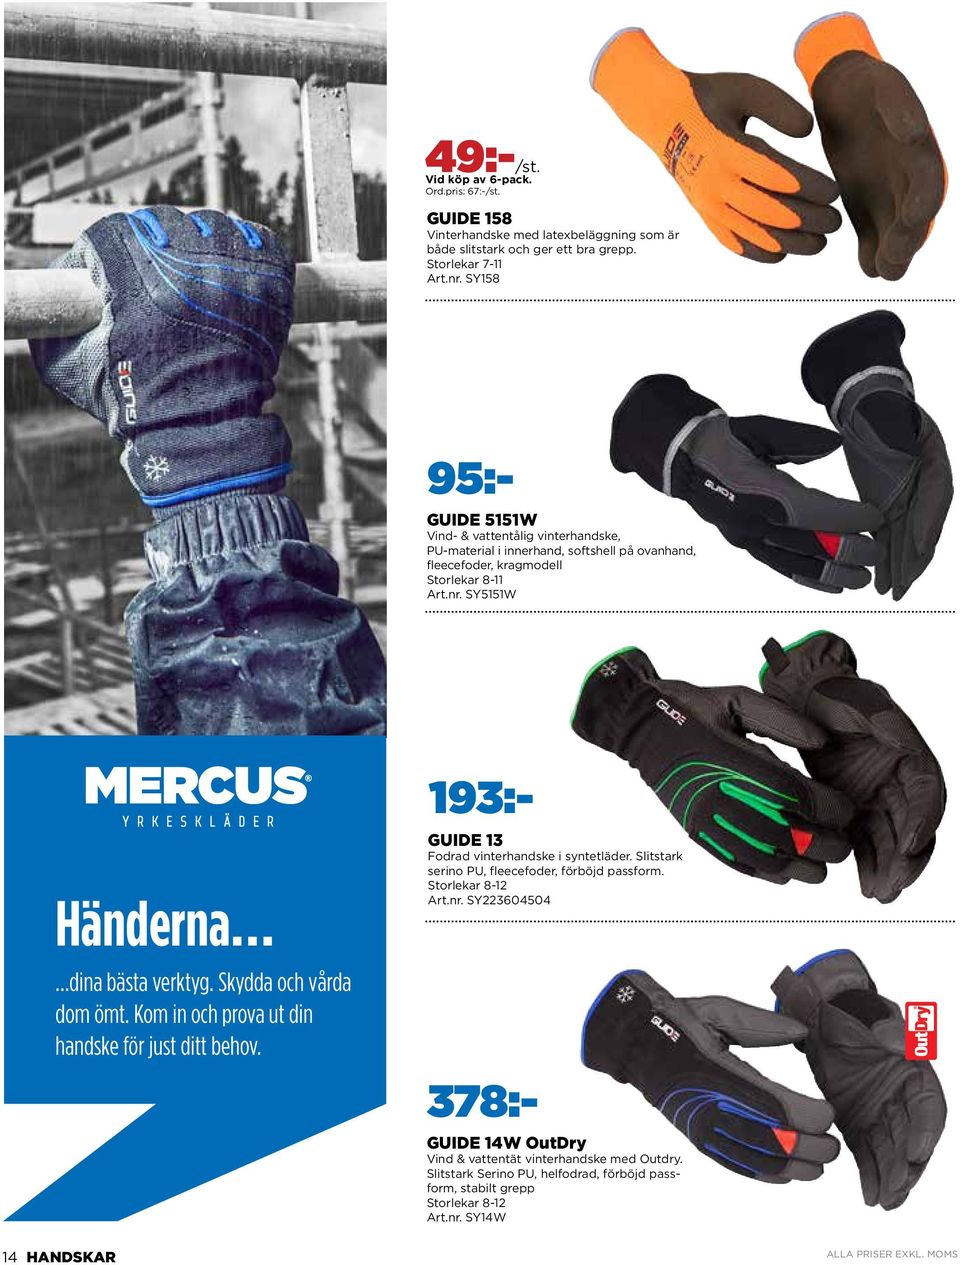 SY5151W Händerna dina bästa verktyg. Skydda och vårda dom ömt. Kom in och prova ut din handske för just ditt behov. 378:- GUIDE 13 Fodrad vinterhandske i syntetläder.